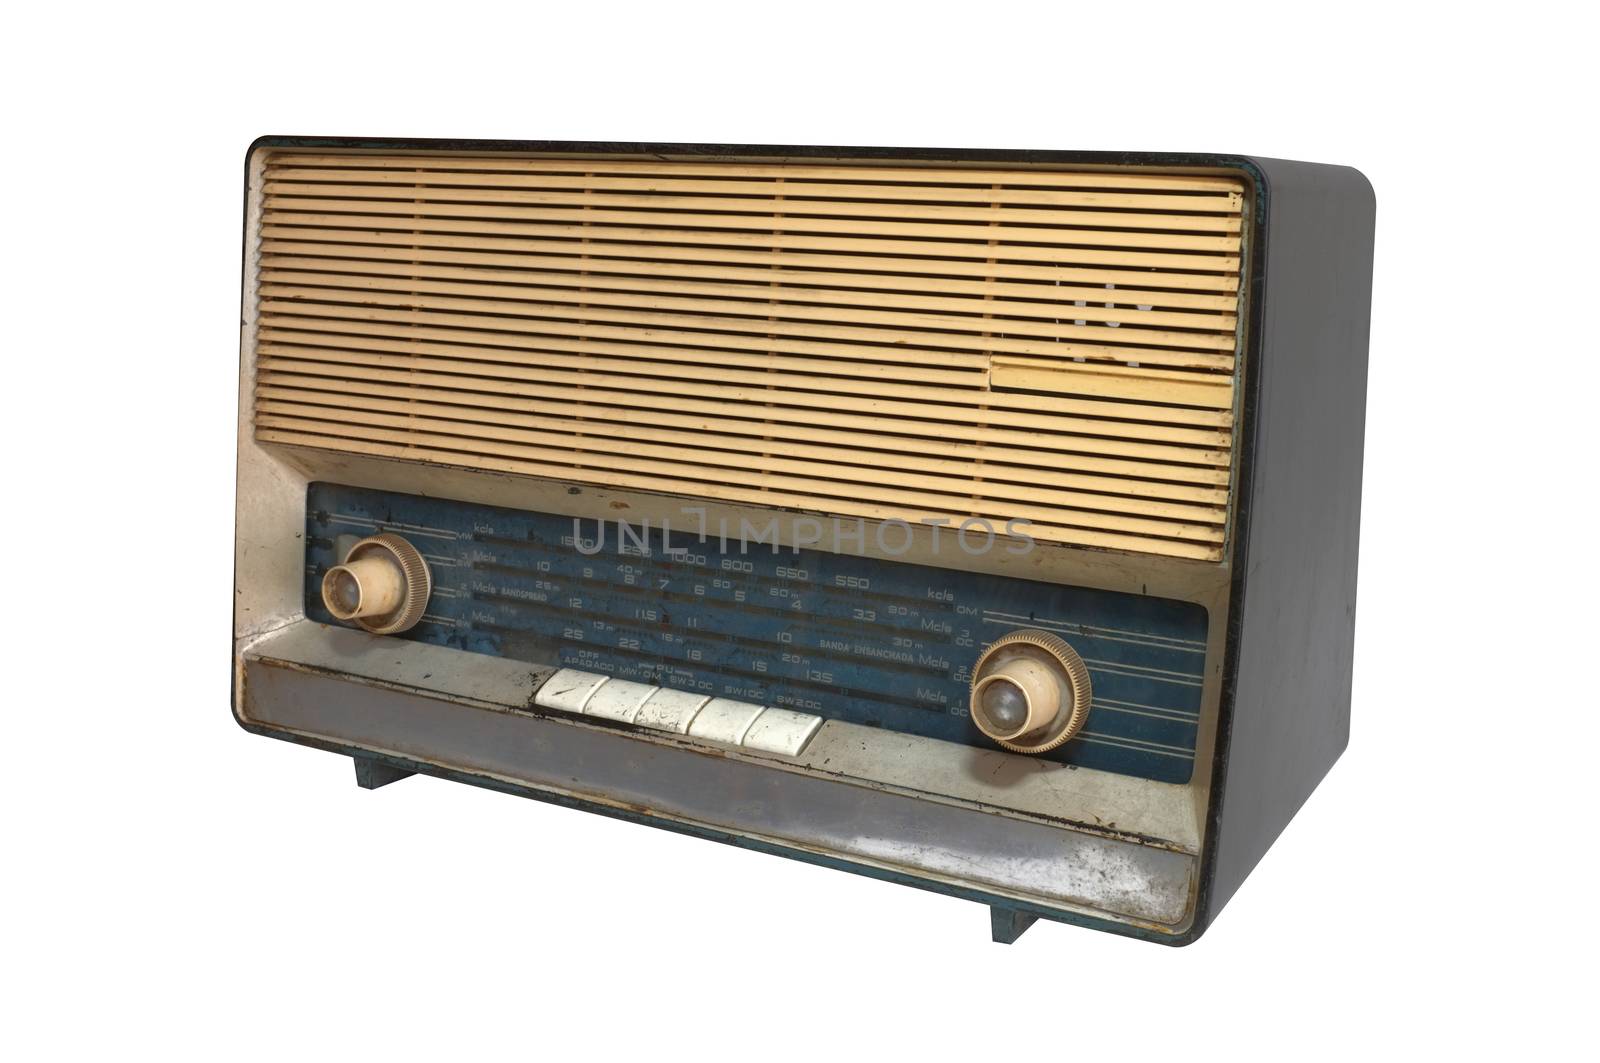 Retro radio receiver of the last century